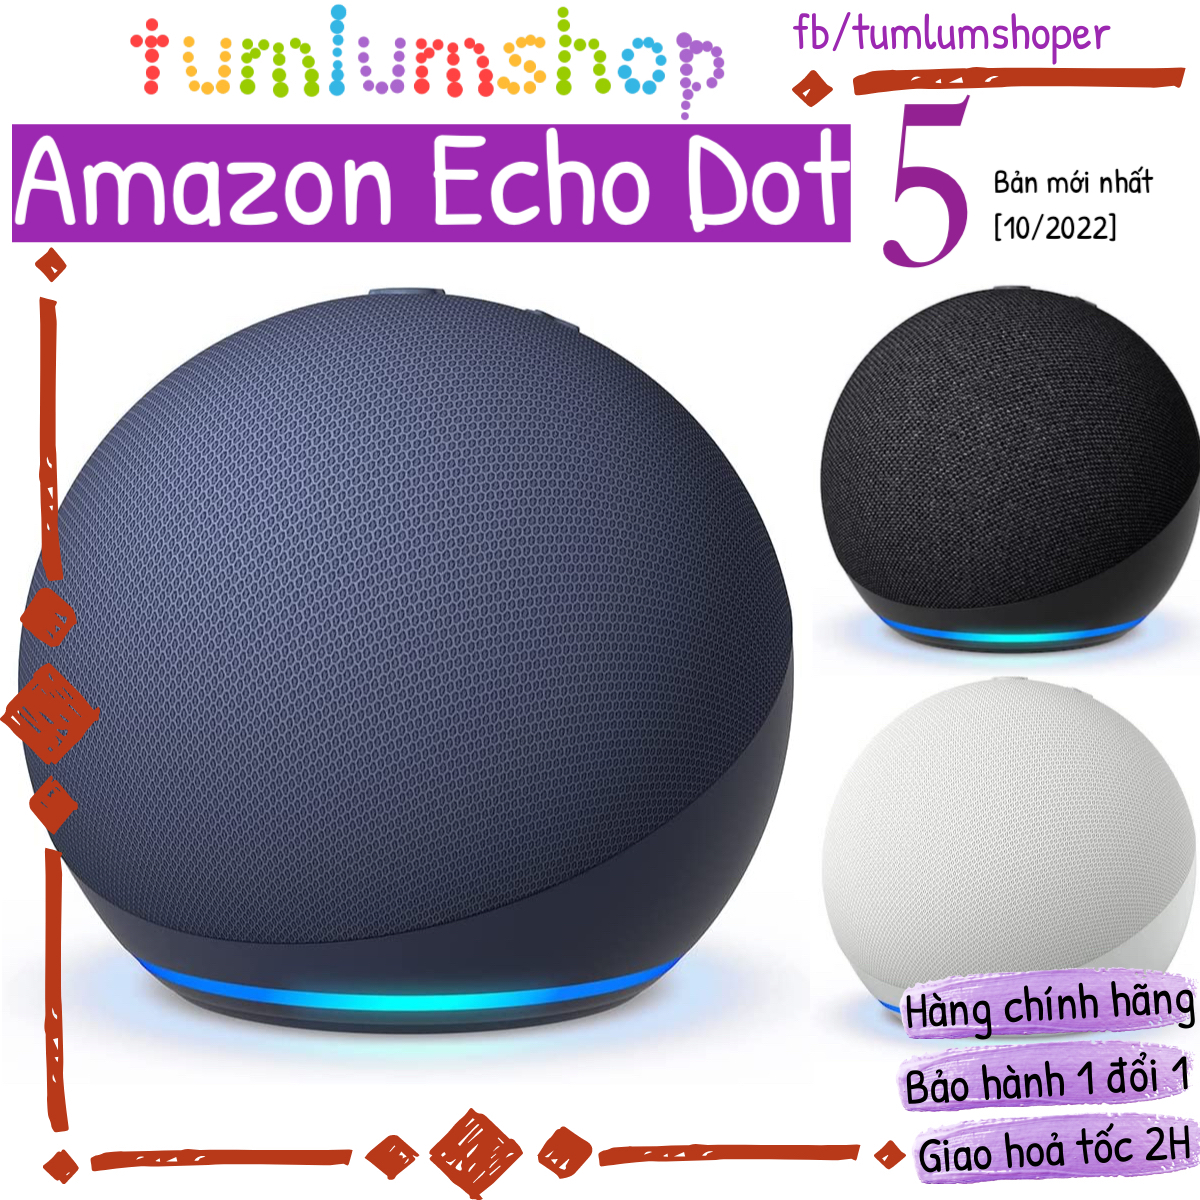 Amazon Echo Dot 5 - Loa bluetooth thông minh thế hệ mới 2022